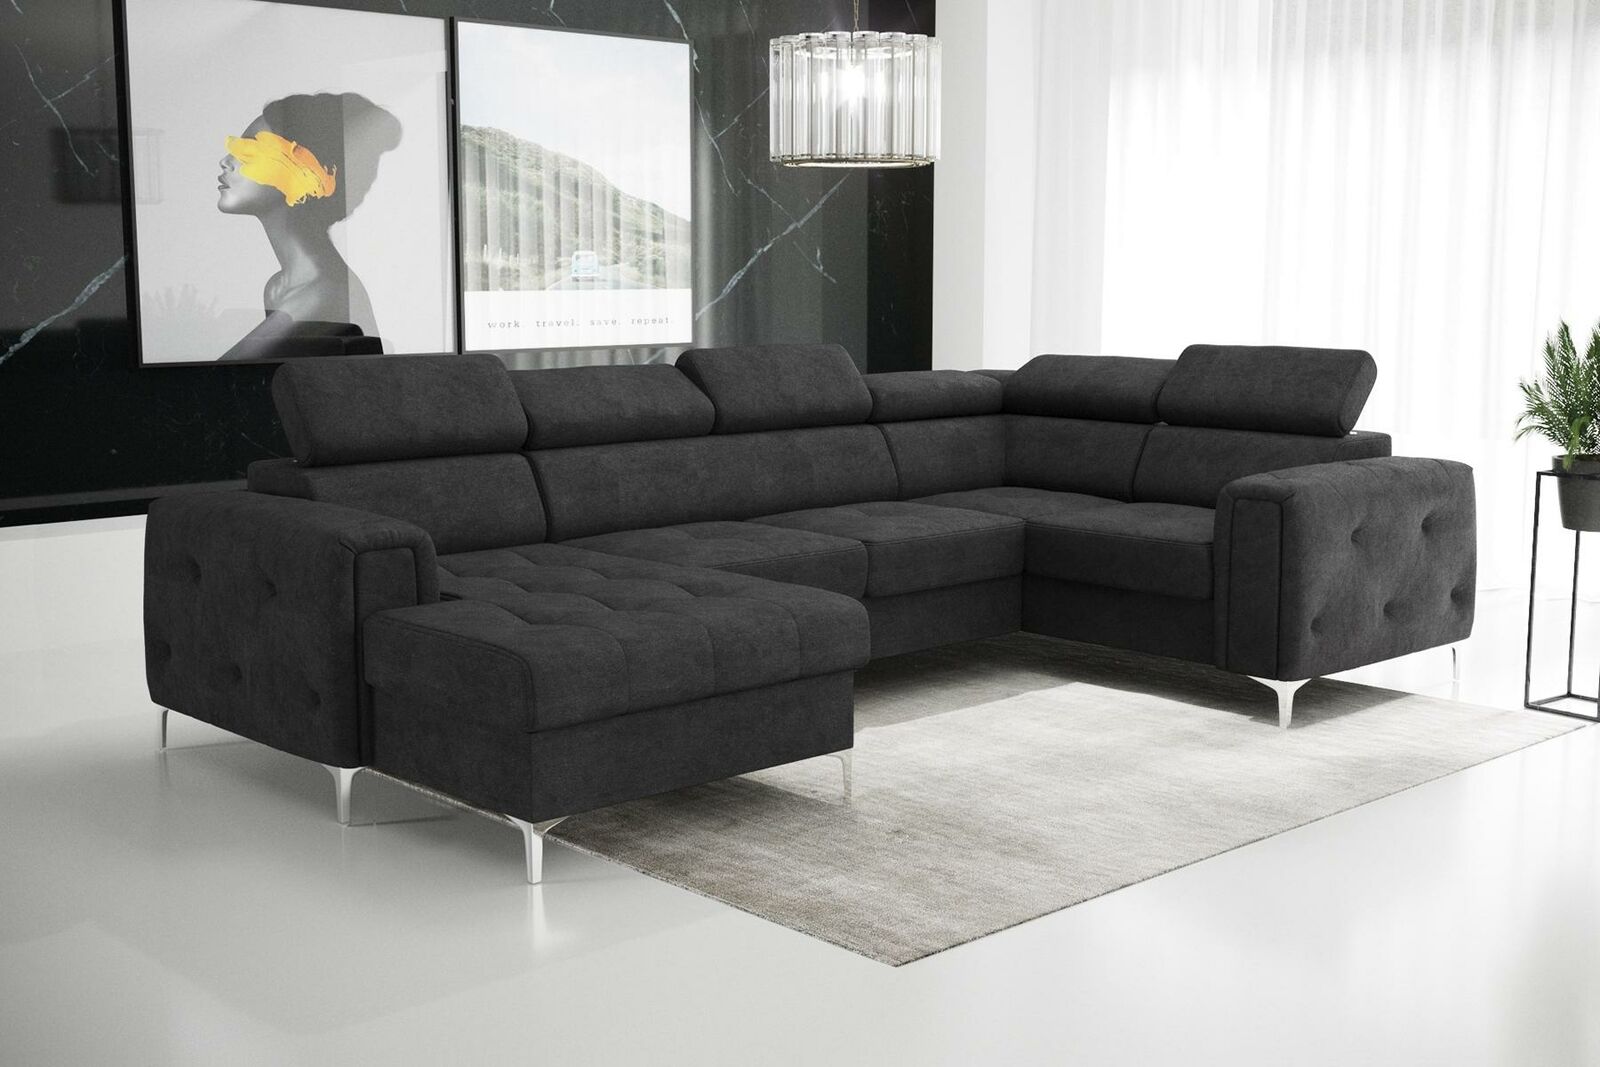 Wohnlandschaft Design Ecksofa Textil Couchen Sofas U Form Sofa Couch Polster Neu